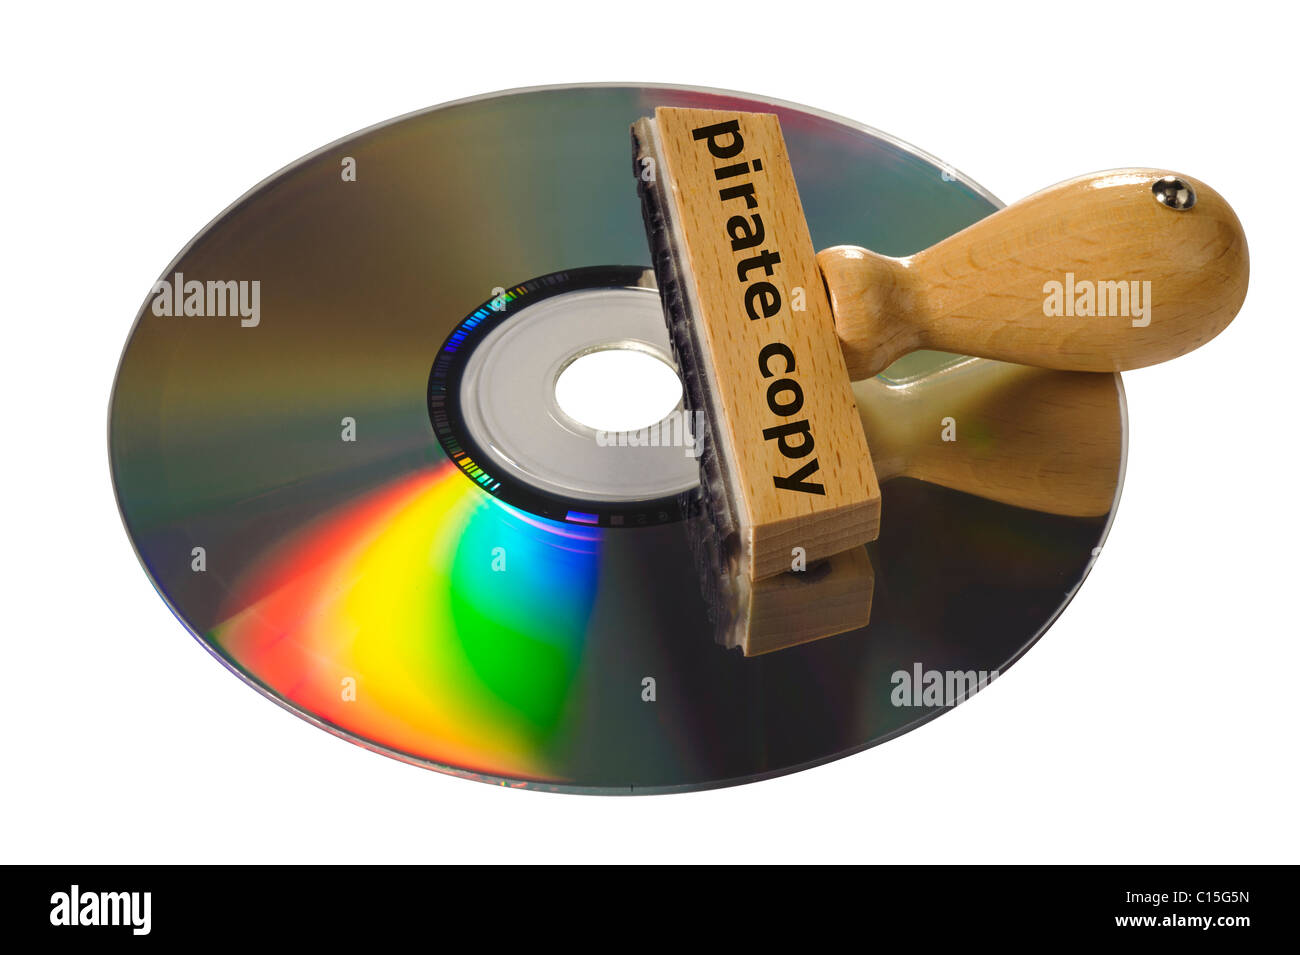 Copie pirate d'un logiciel ou d'un CD vidéo Photo Stock - Alamy